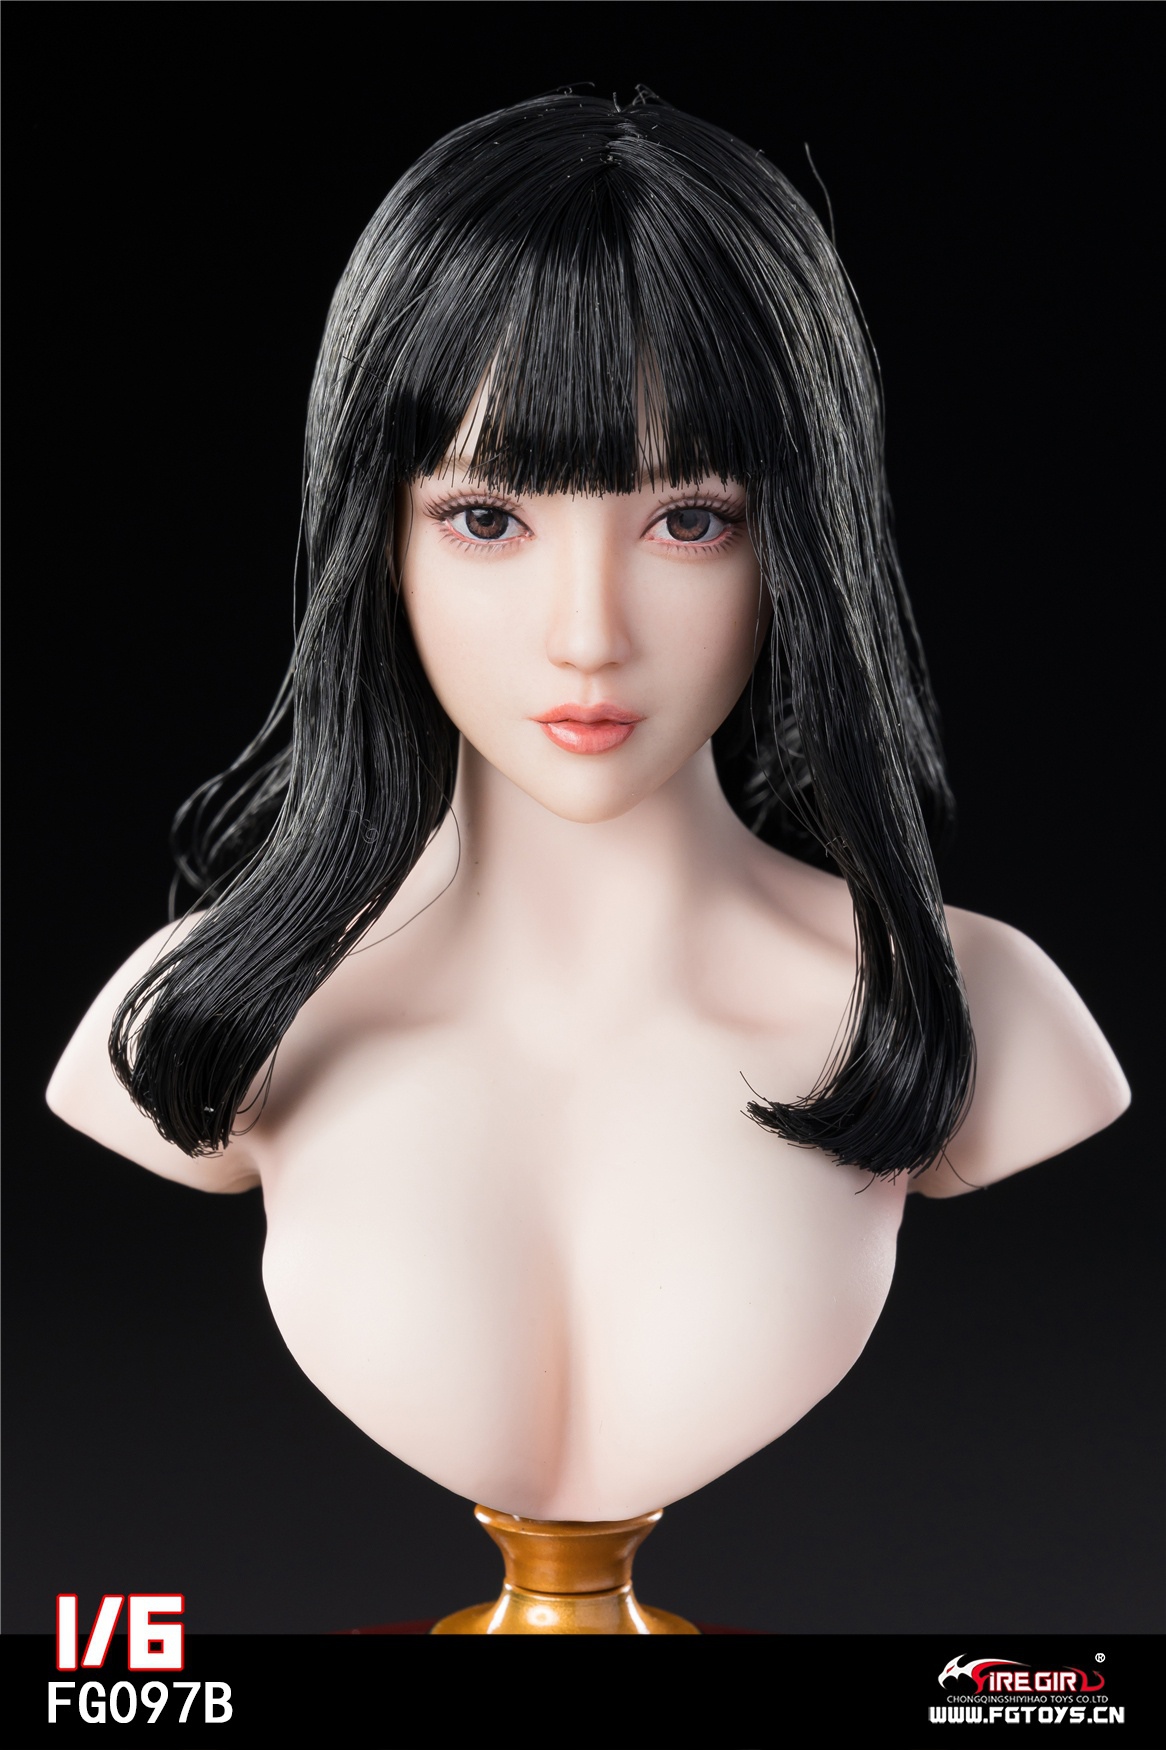 firegirl - NEW PRODUCT: Fire Girl Toys: Asian Girl Head Sculpture (FG097A/FG097B/FG097C) 1273